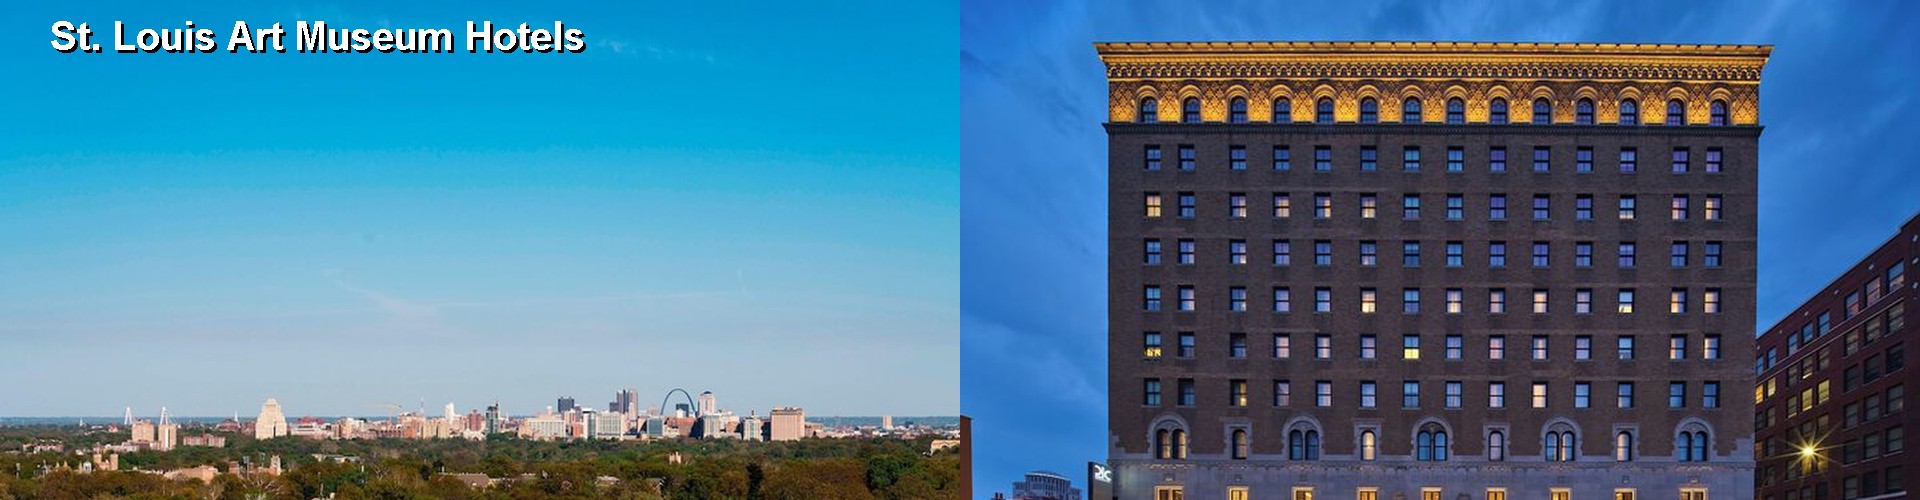 5 Best Hotels near St. Louis Art Museum